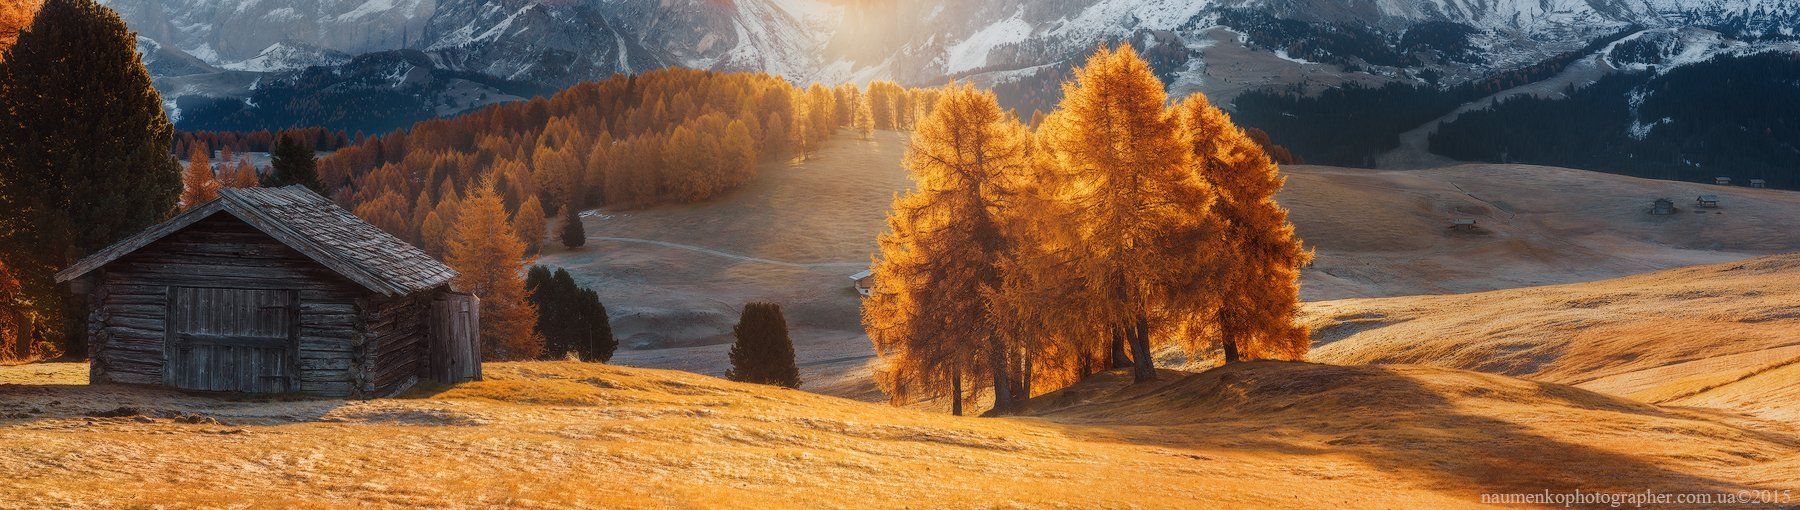 горы,	доломиты,	италия, лиственница,	осень, панорама,	свет,	утро,	alpe di siusi, Александр Науменко